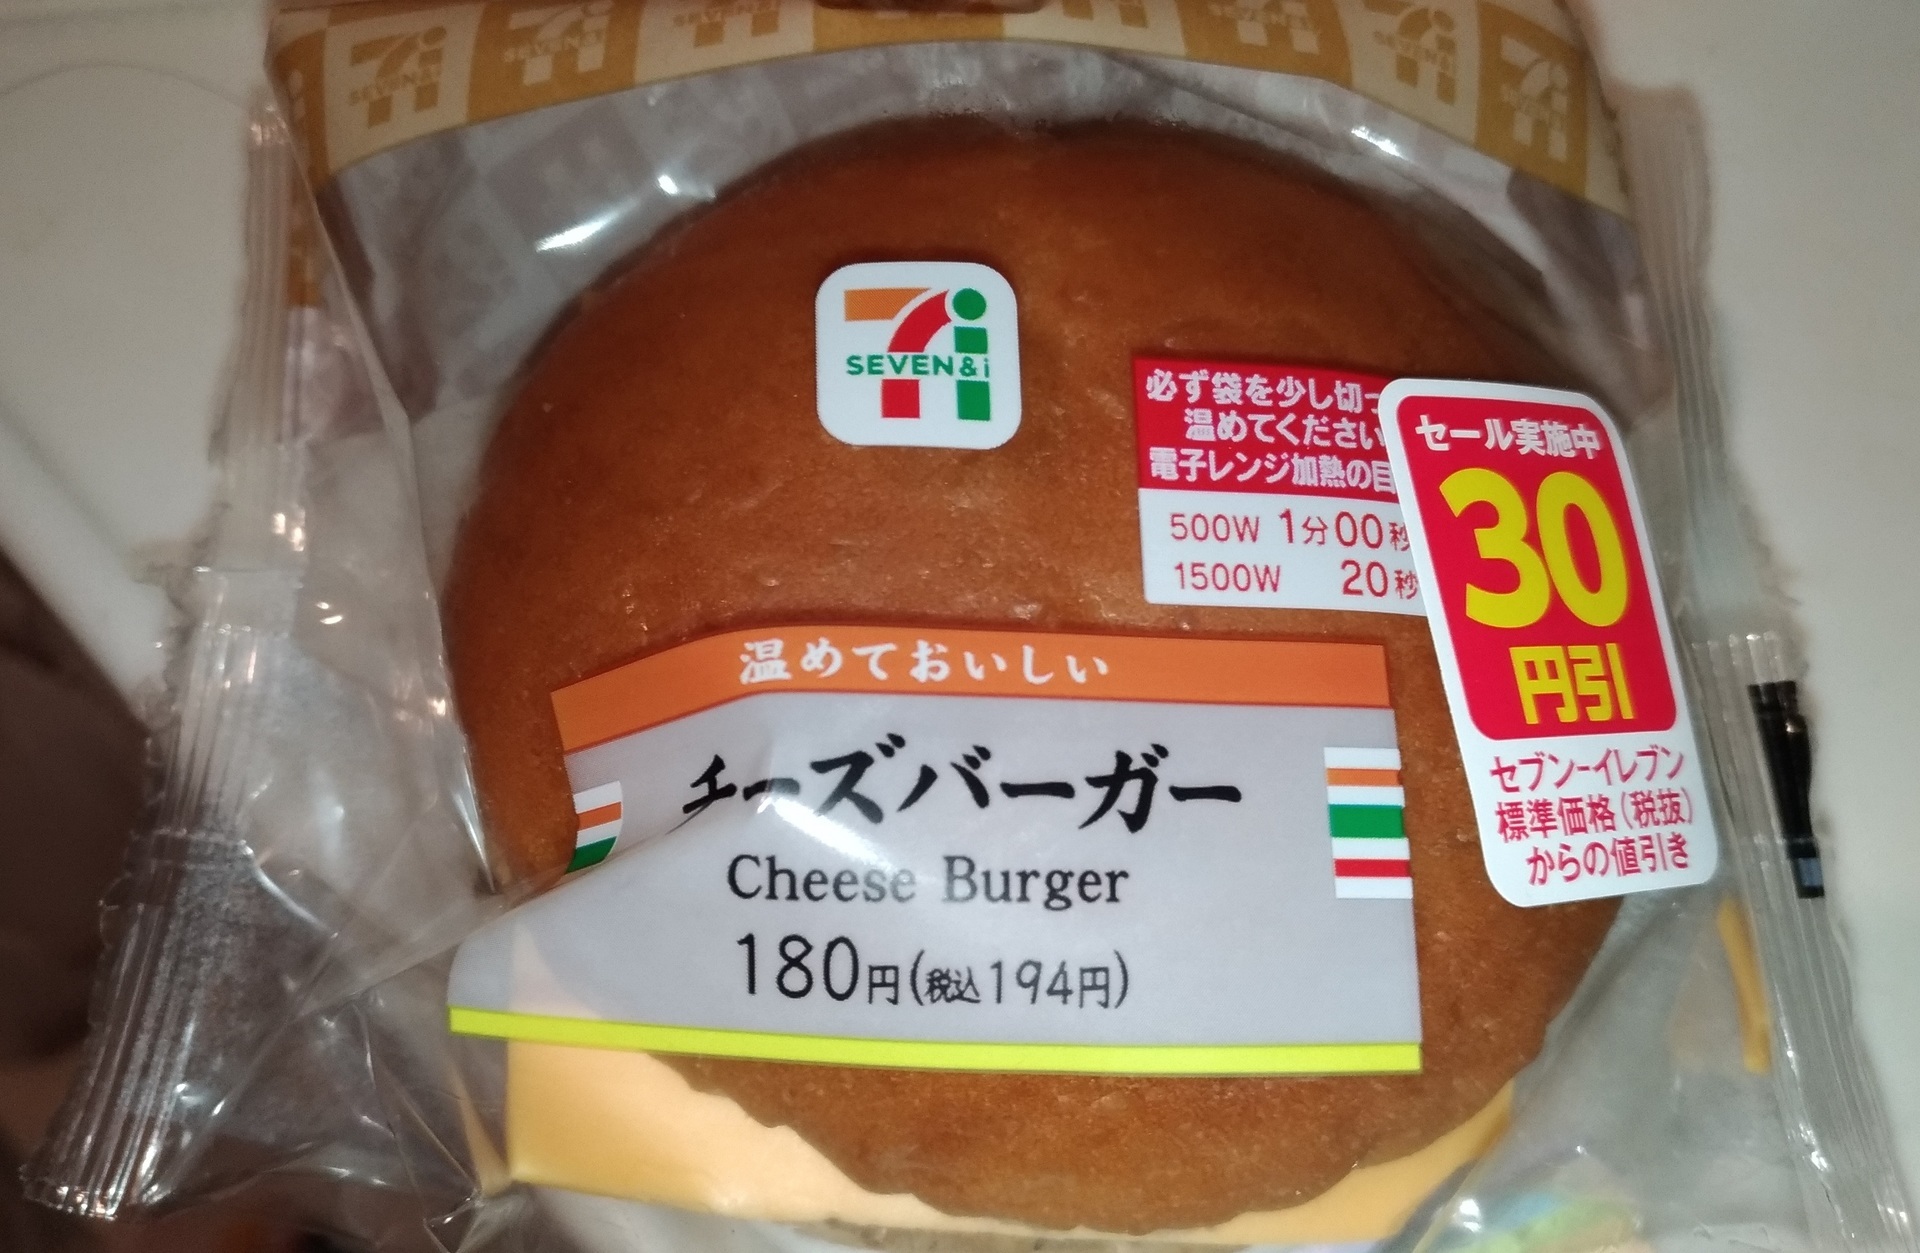 ハンバーガー セブンイレブン30円引き初めて買ってみた セブンイレブン人気おすすめ おにぎりお惣菜新作種類ブログで